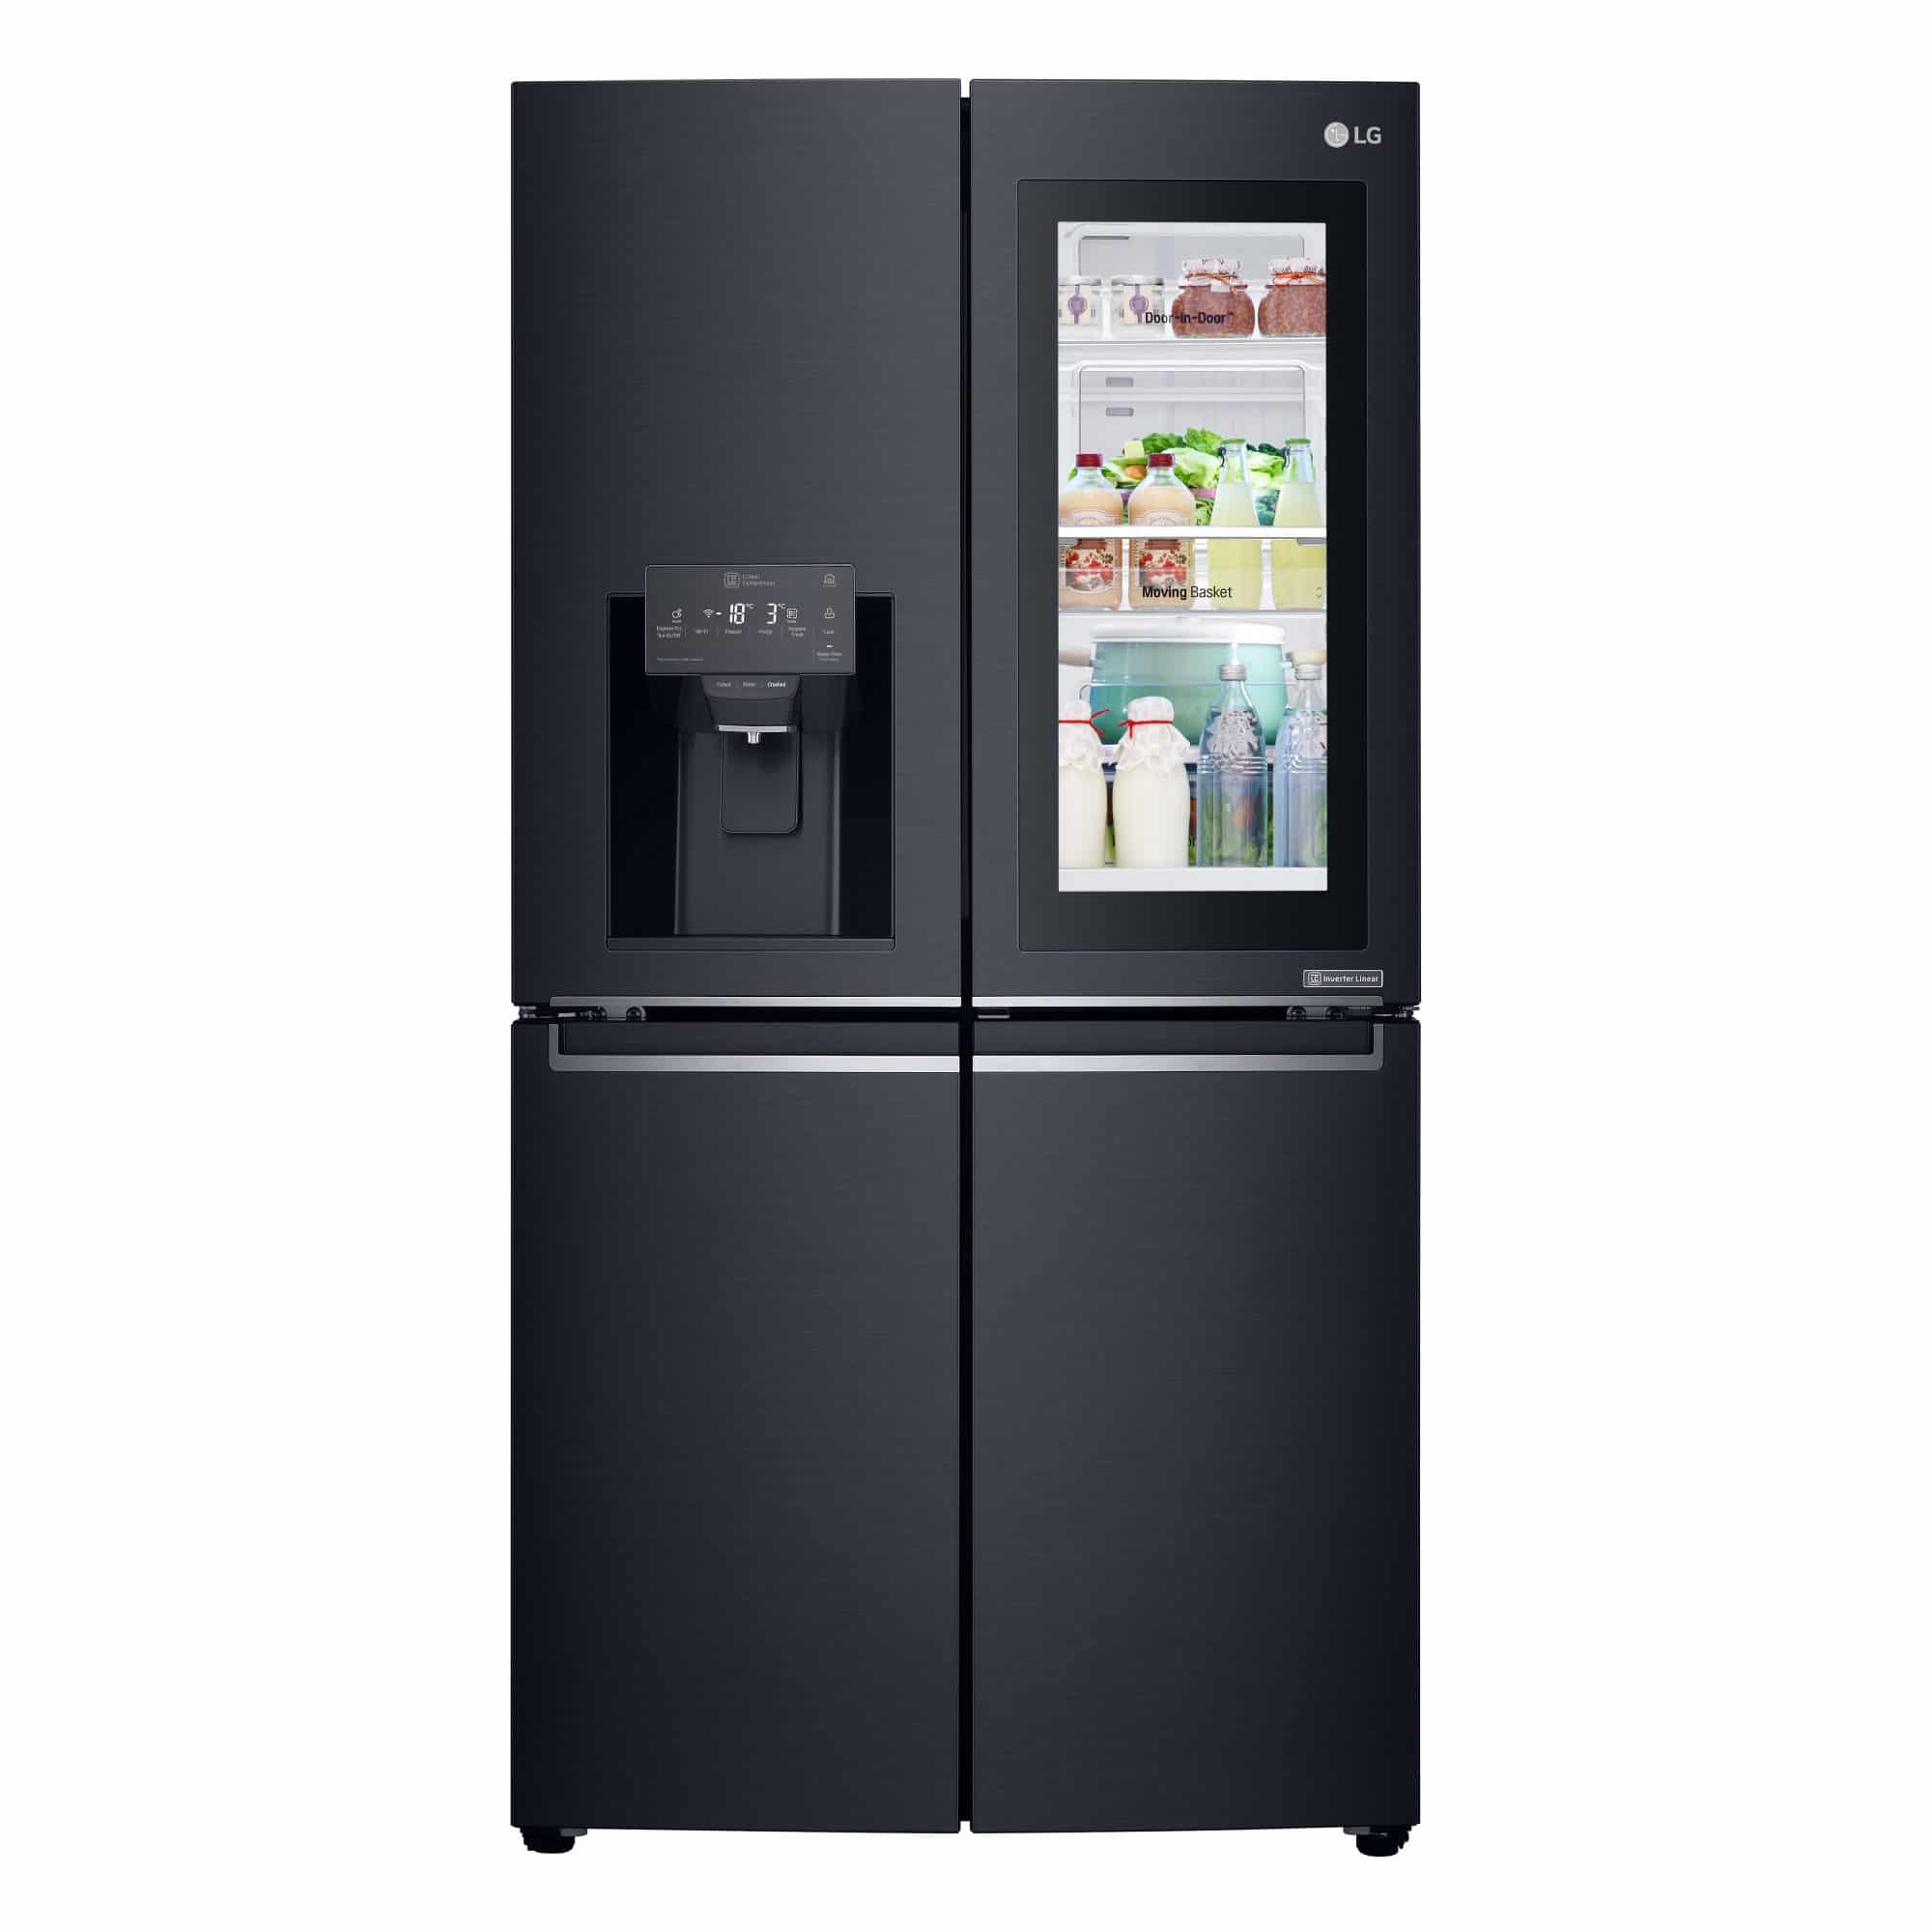 แอลจีส่งตู้เย็นมัลติดอร์รุ่นใหม่ ชูระบบอินเวอร์เตอร์ ลิเนีย คอมเพรสเซอร์ 3